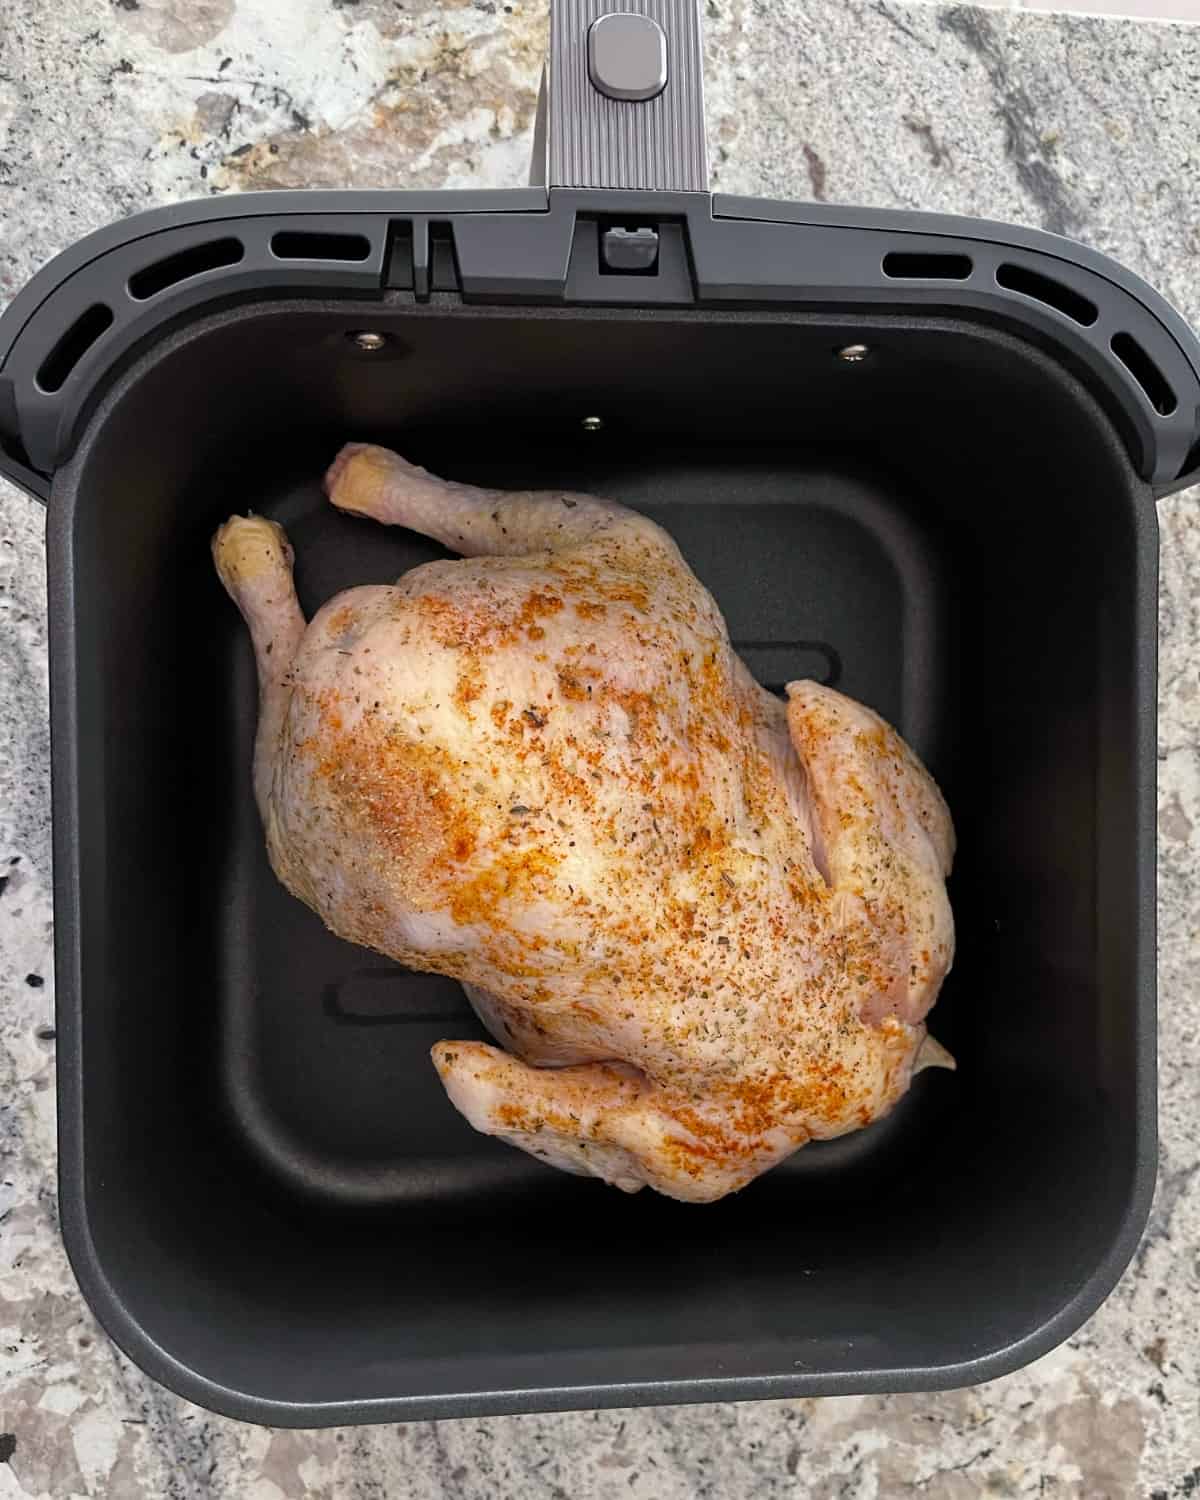 Whole seasoned chicken breast-side down in air fryer basket.